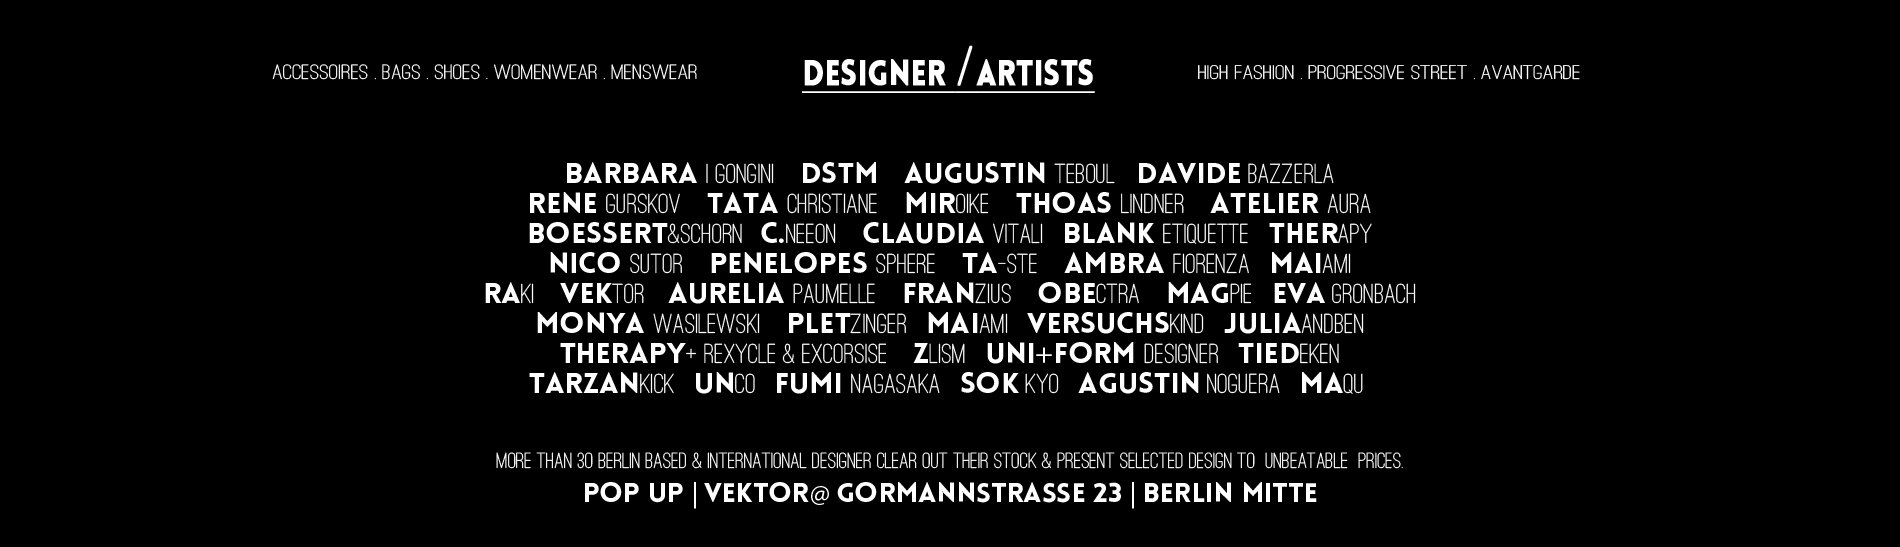 line-up-jaunua-2017-designer-at-projektgalerie-pop-up-designer-berlin-fashion-week-2017